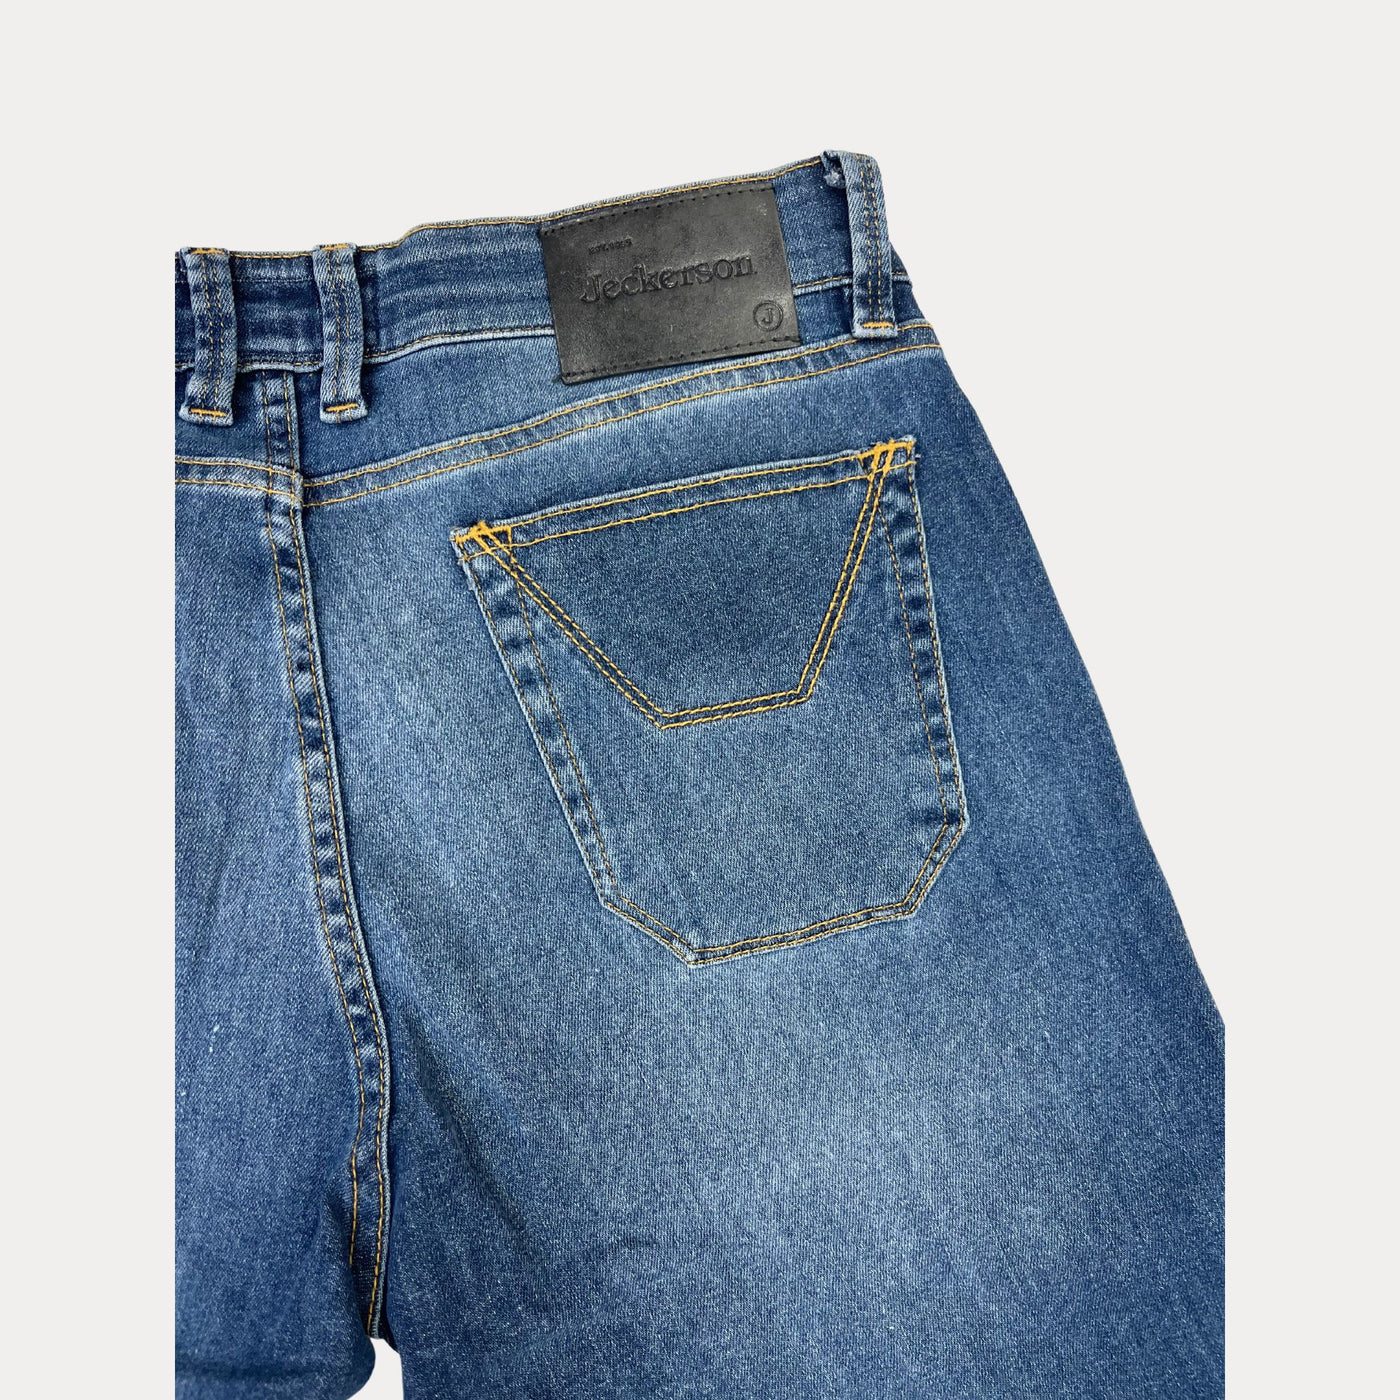 Jeans da uomo denim firmato Jeckerson dettaglio tasca posteriore